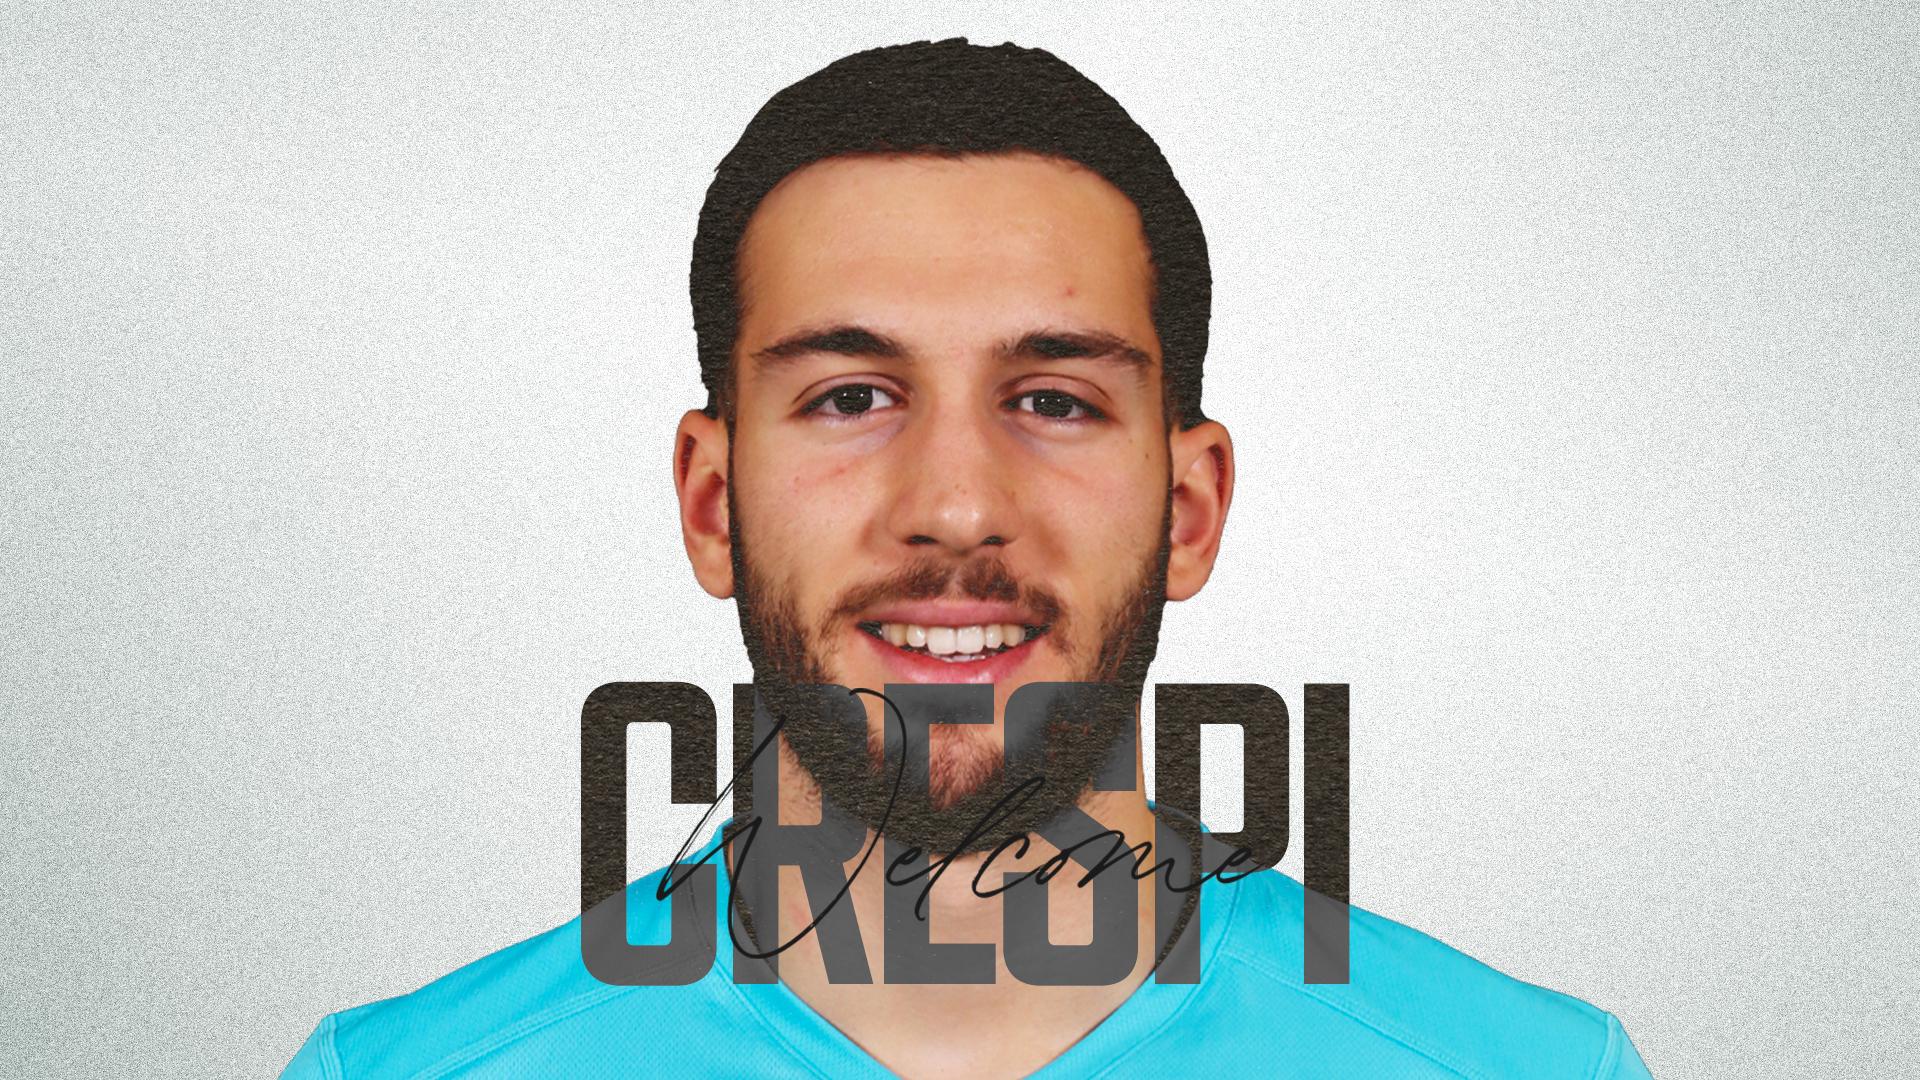 Ufficiale | Gian Marco Crespi è un nuovo calciatore dello Spezia